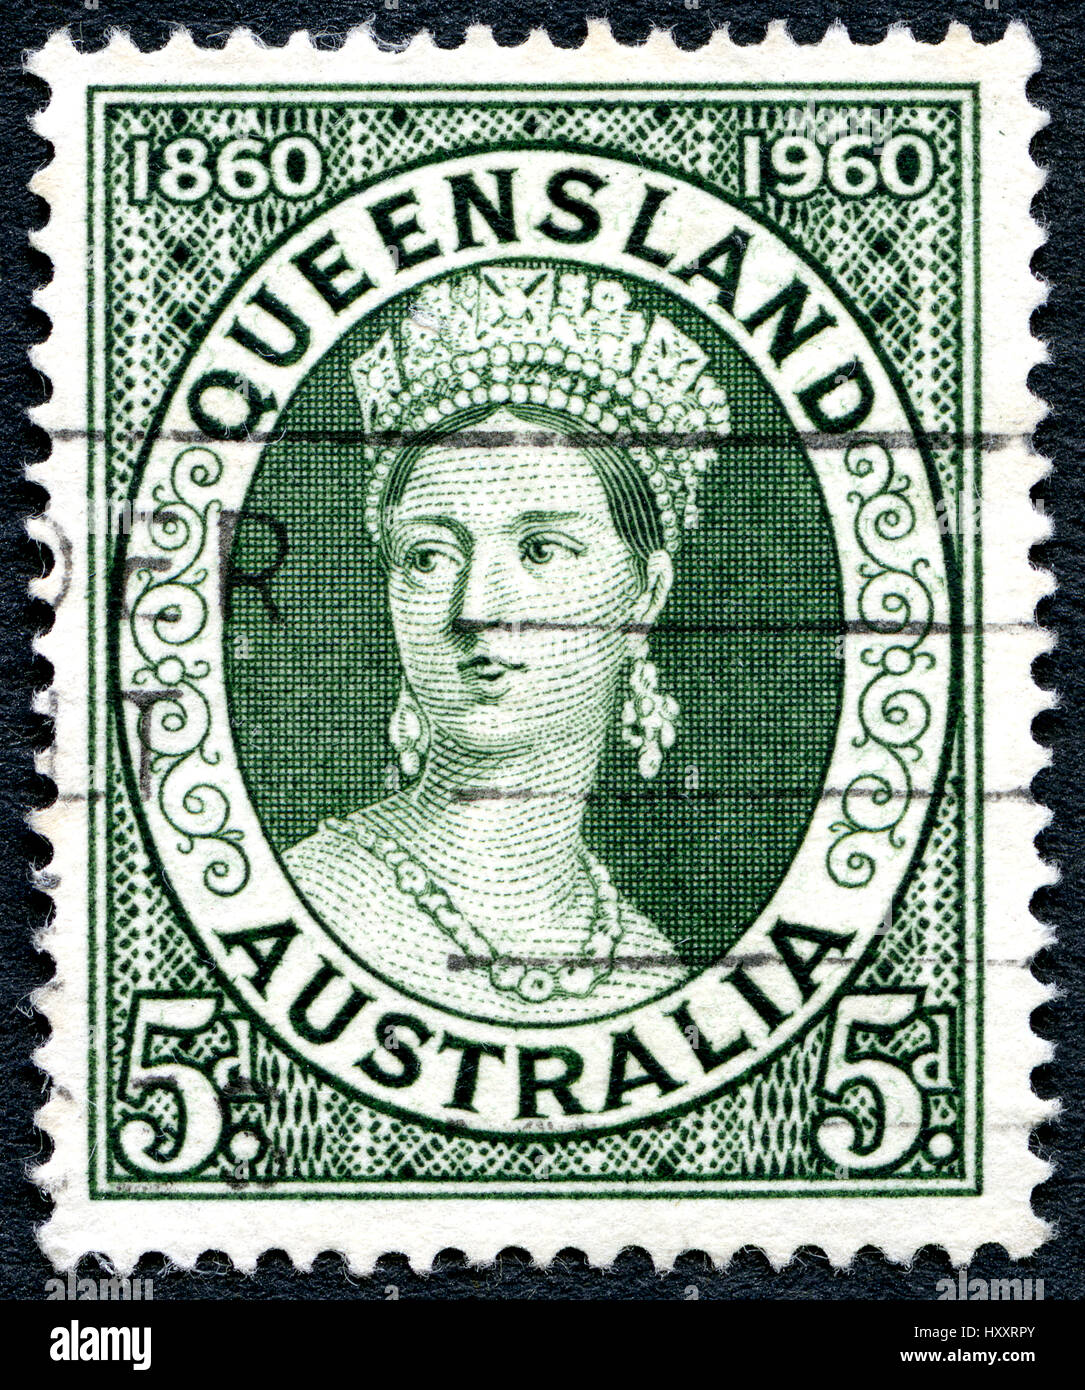 Australien - ca. 1960: Eine gebrauchte Briefmarke aus Australien, zeigt ein Porträt von Königin Victoria und zum Gedenken an die Hundertjahrfeier des Queensland pos Stockfoto